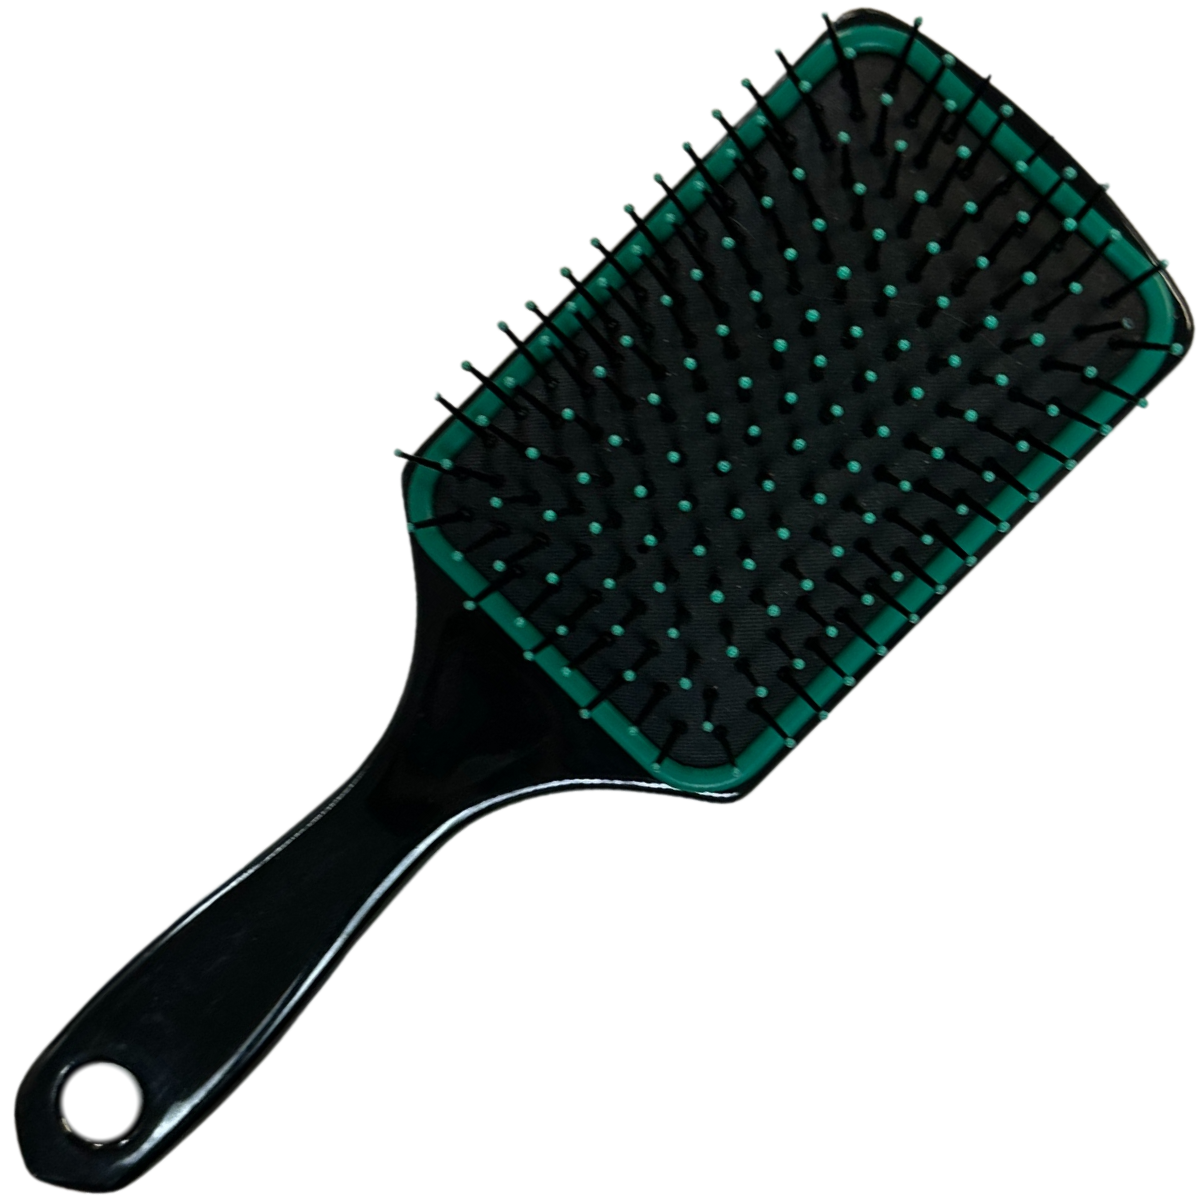 Mane & Tail Paddle Brush in Green